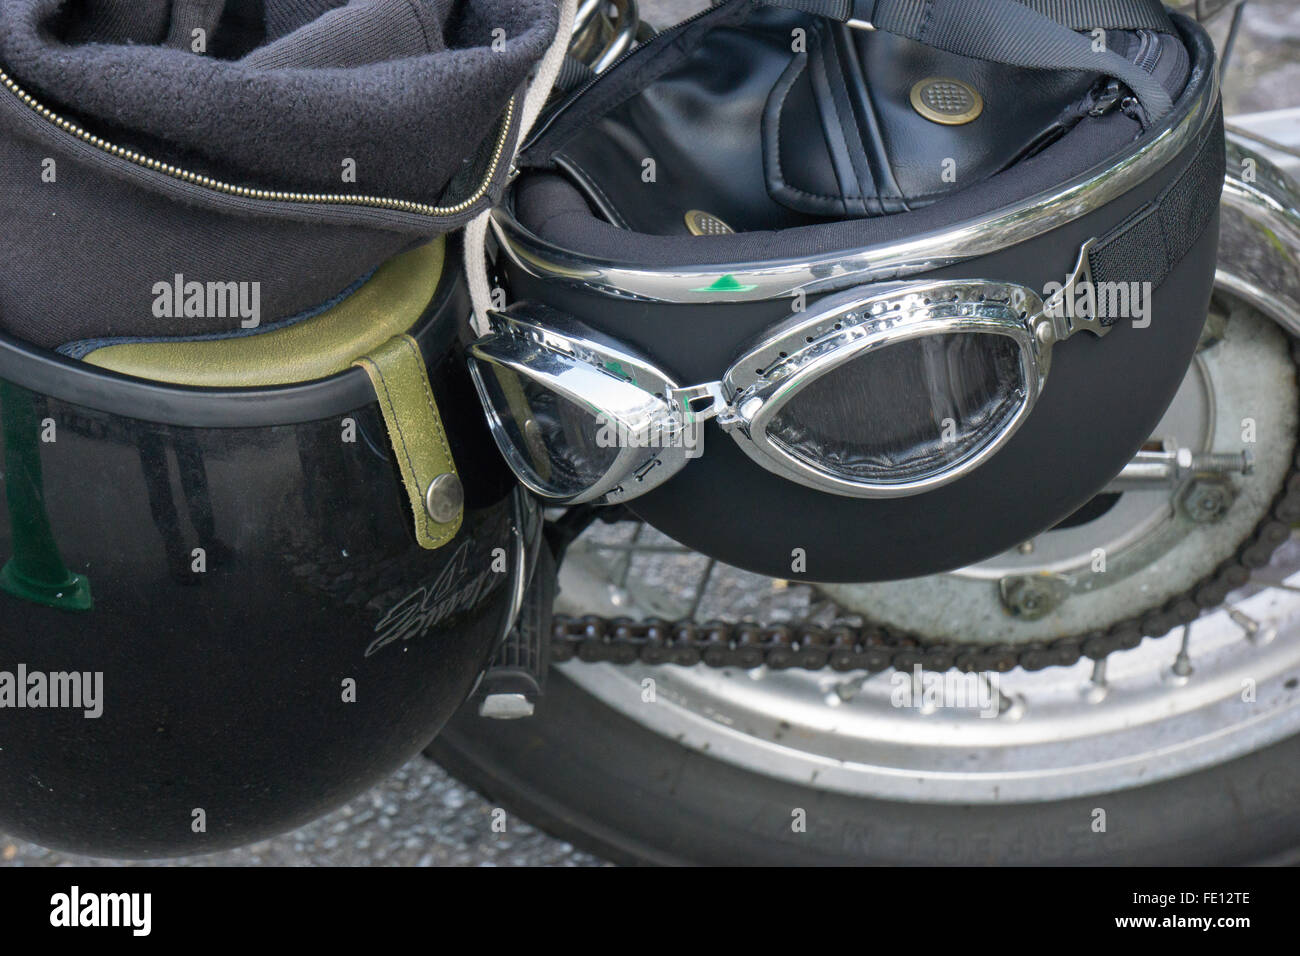 Casques et lunettes de sécurité accroché sur une moto à Kyoto au Japon Banque D'Images